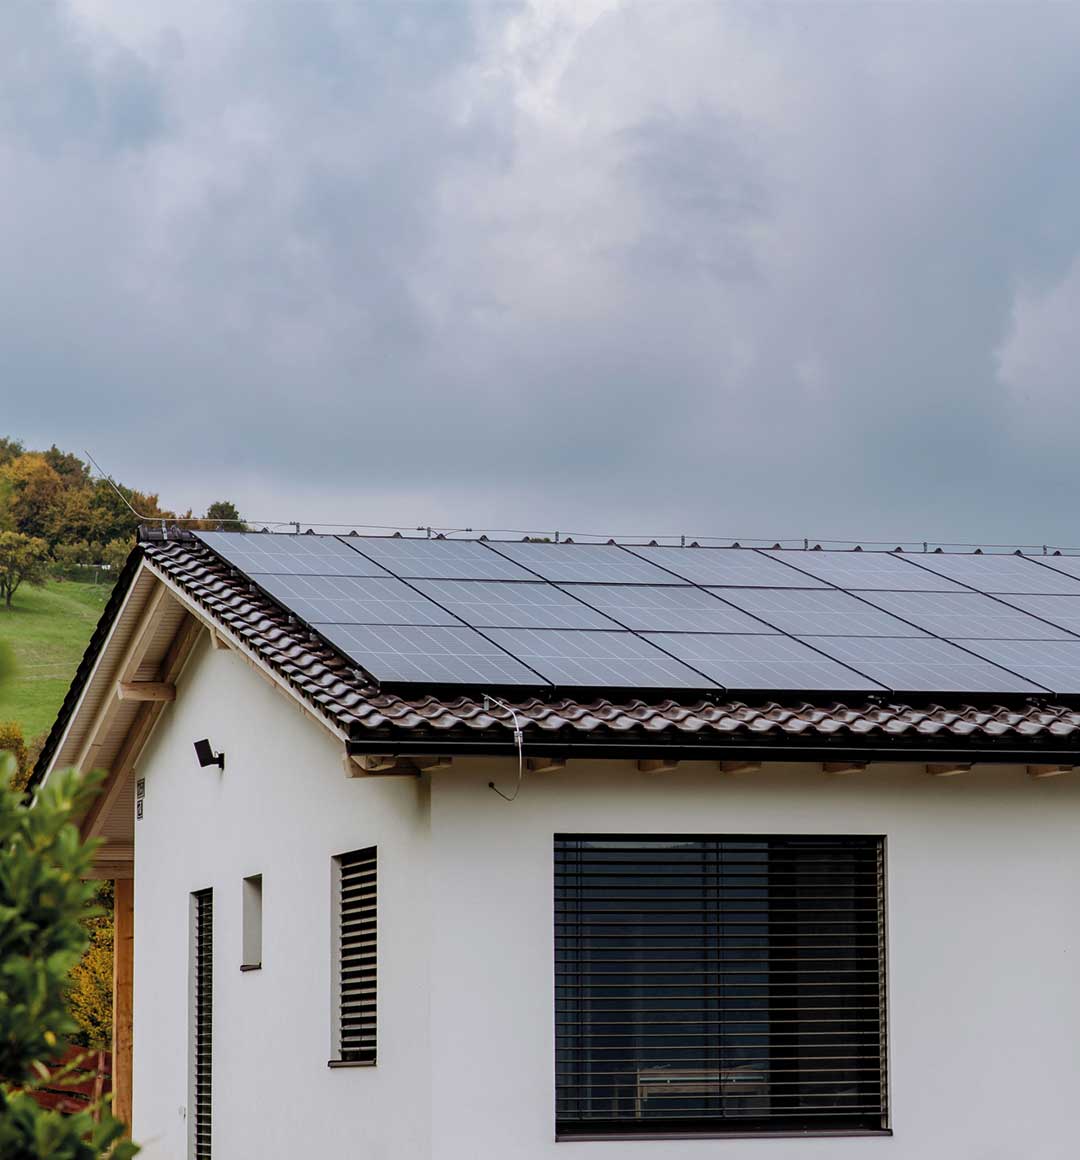 Modernes Einfamilienhaus erzeugt Energie mit Solarmodulen auf dem Dach. © Halfpoint Images / Moment via Getty Images